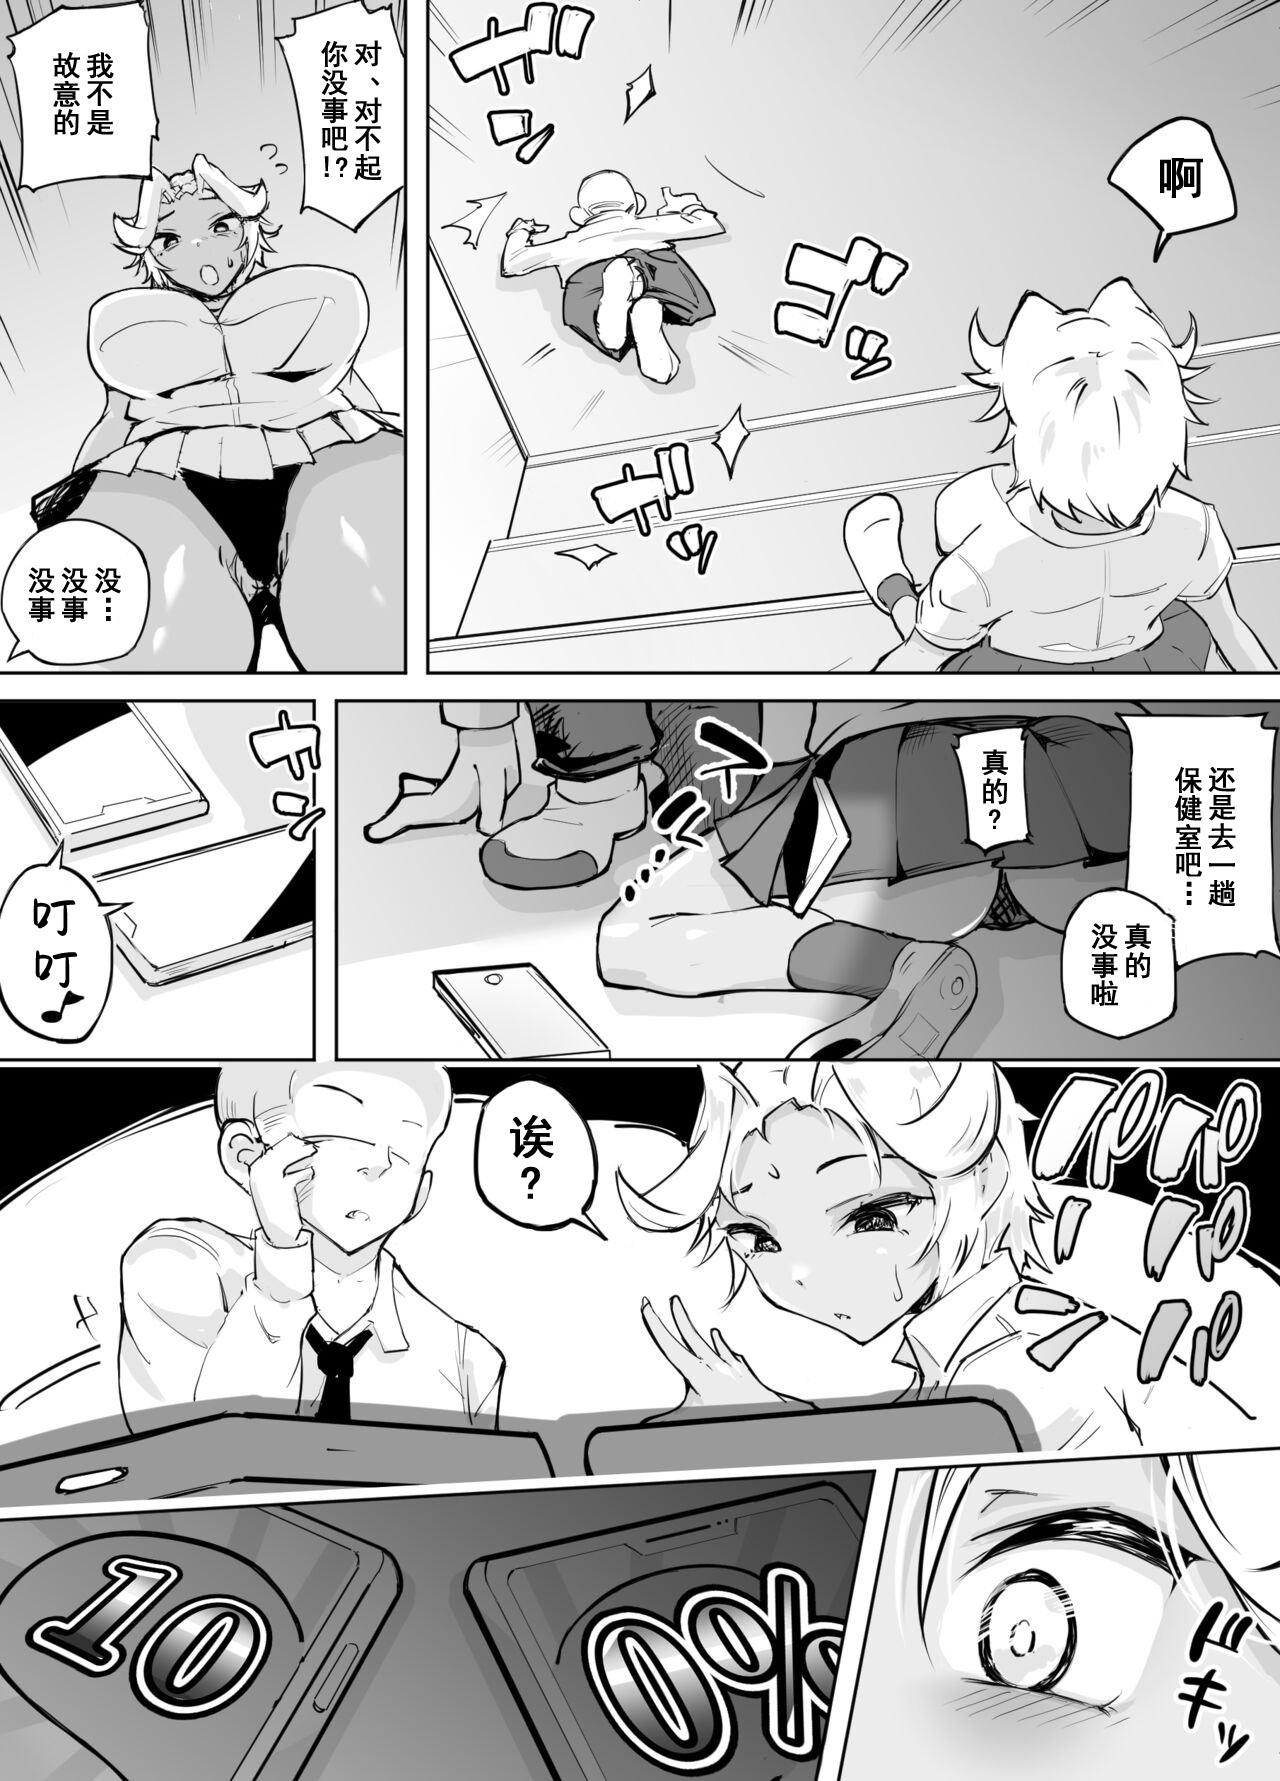 Pervert Kare yori Ii Hito ga Aishou Appli de Mitsukatte... - Original Wanking - Page 7